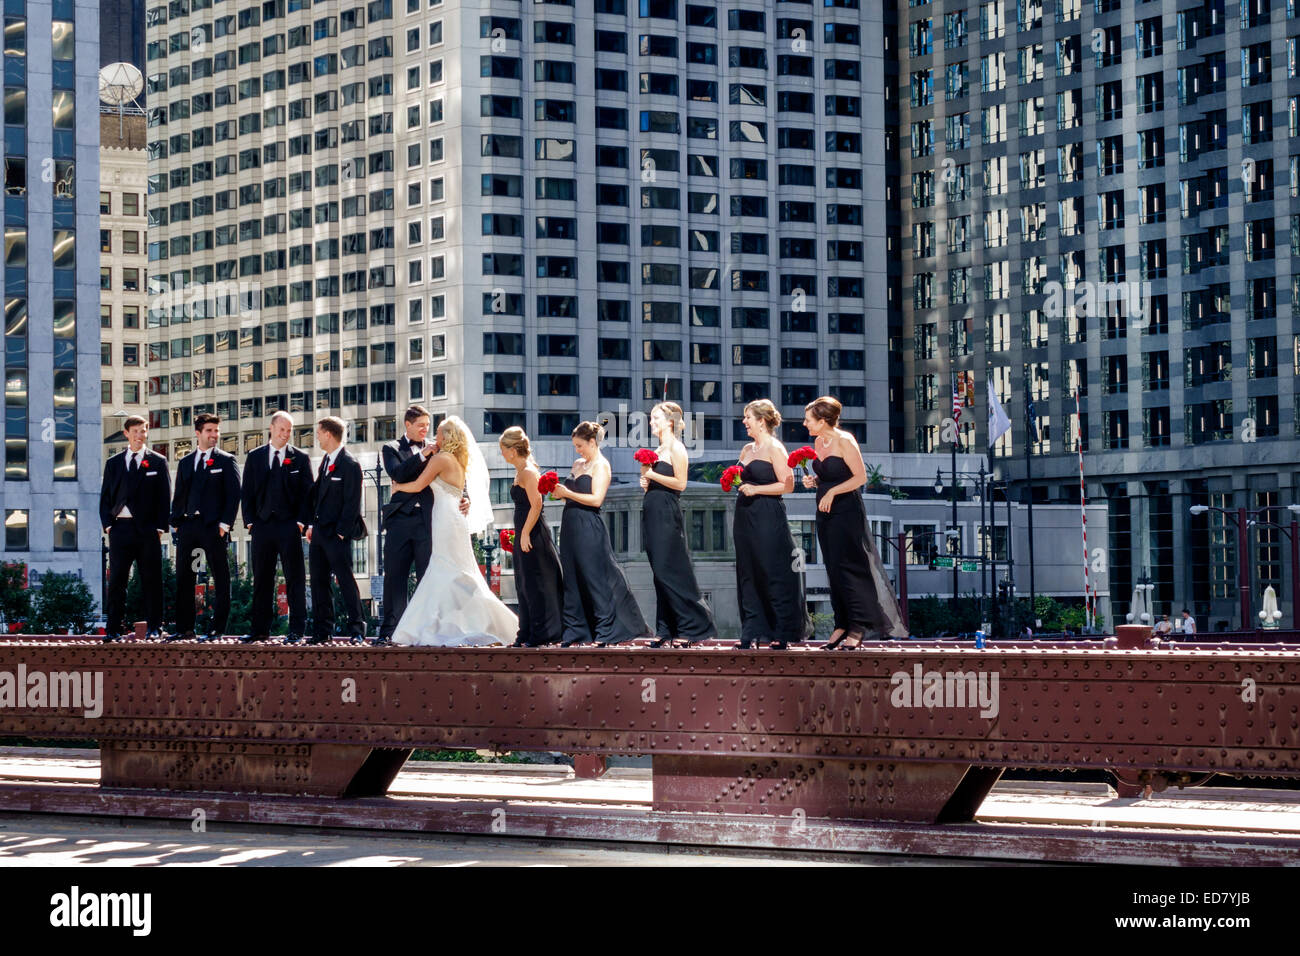 Chicago Illinois,North Wabash Avenue Bridge,wedding party,groom,bride,groomsmen,bridesmaids,posing,downtown,skyscrapers,buildings,IL140906129 Stock Photo